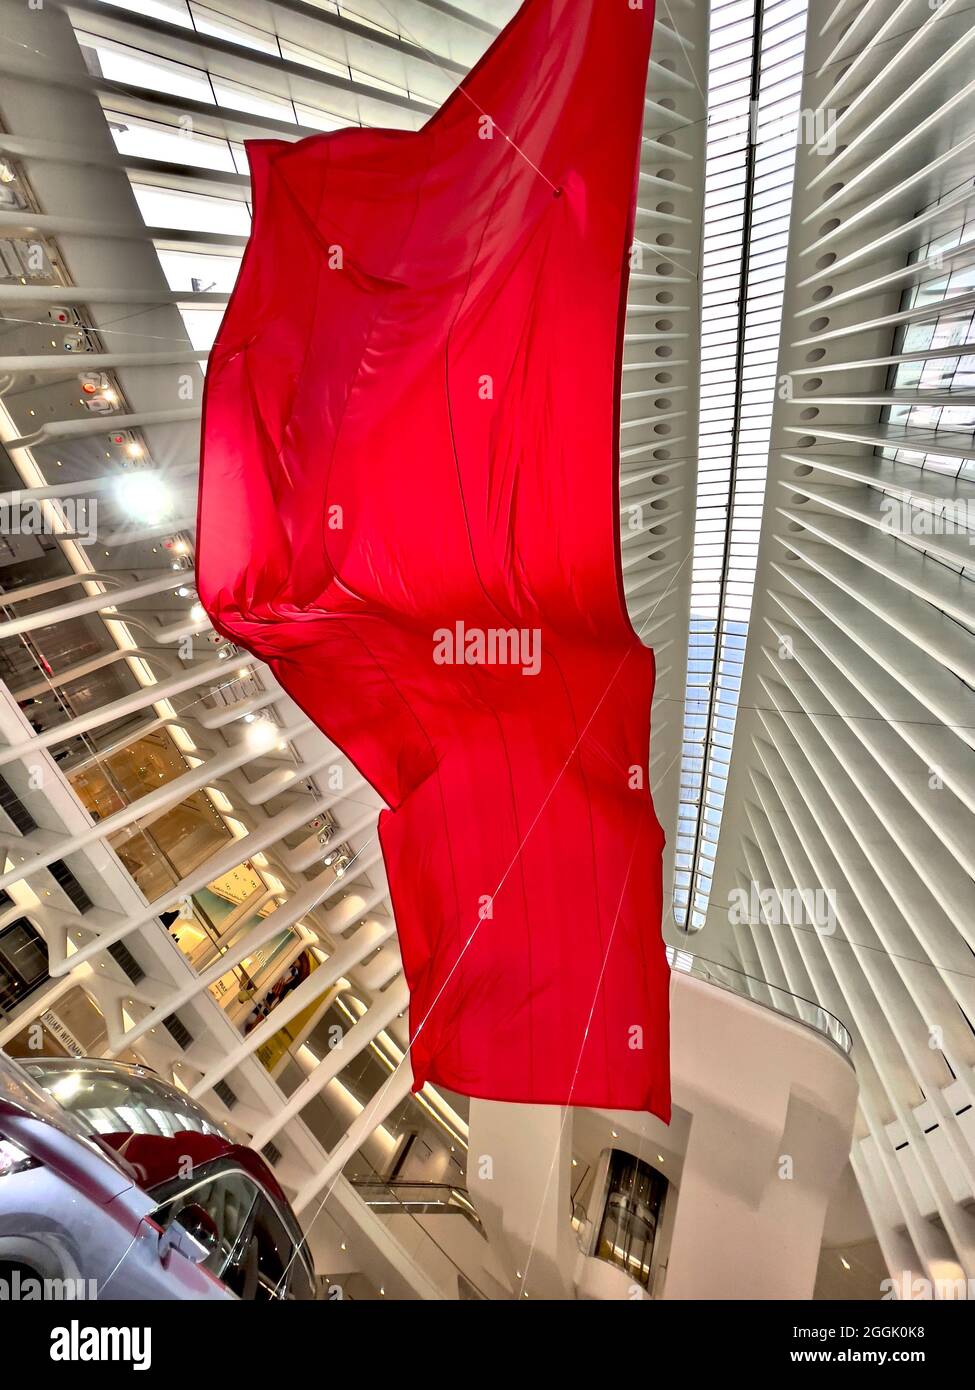 Grande bandiera rossa sopra la nuova auto Infiniti del 2021 all'interno dell'Oculus al World Trade Center di Manhattan, NYC Foto Stock